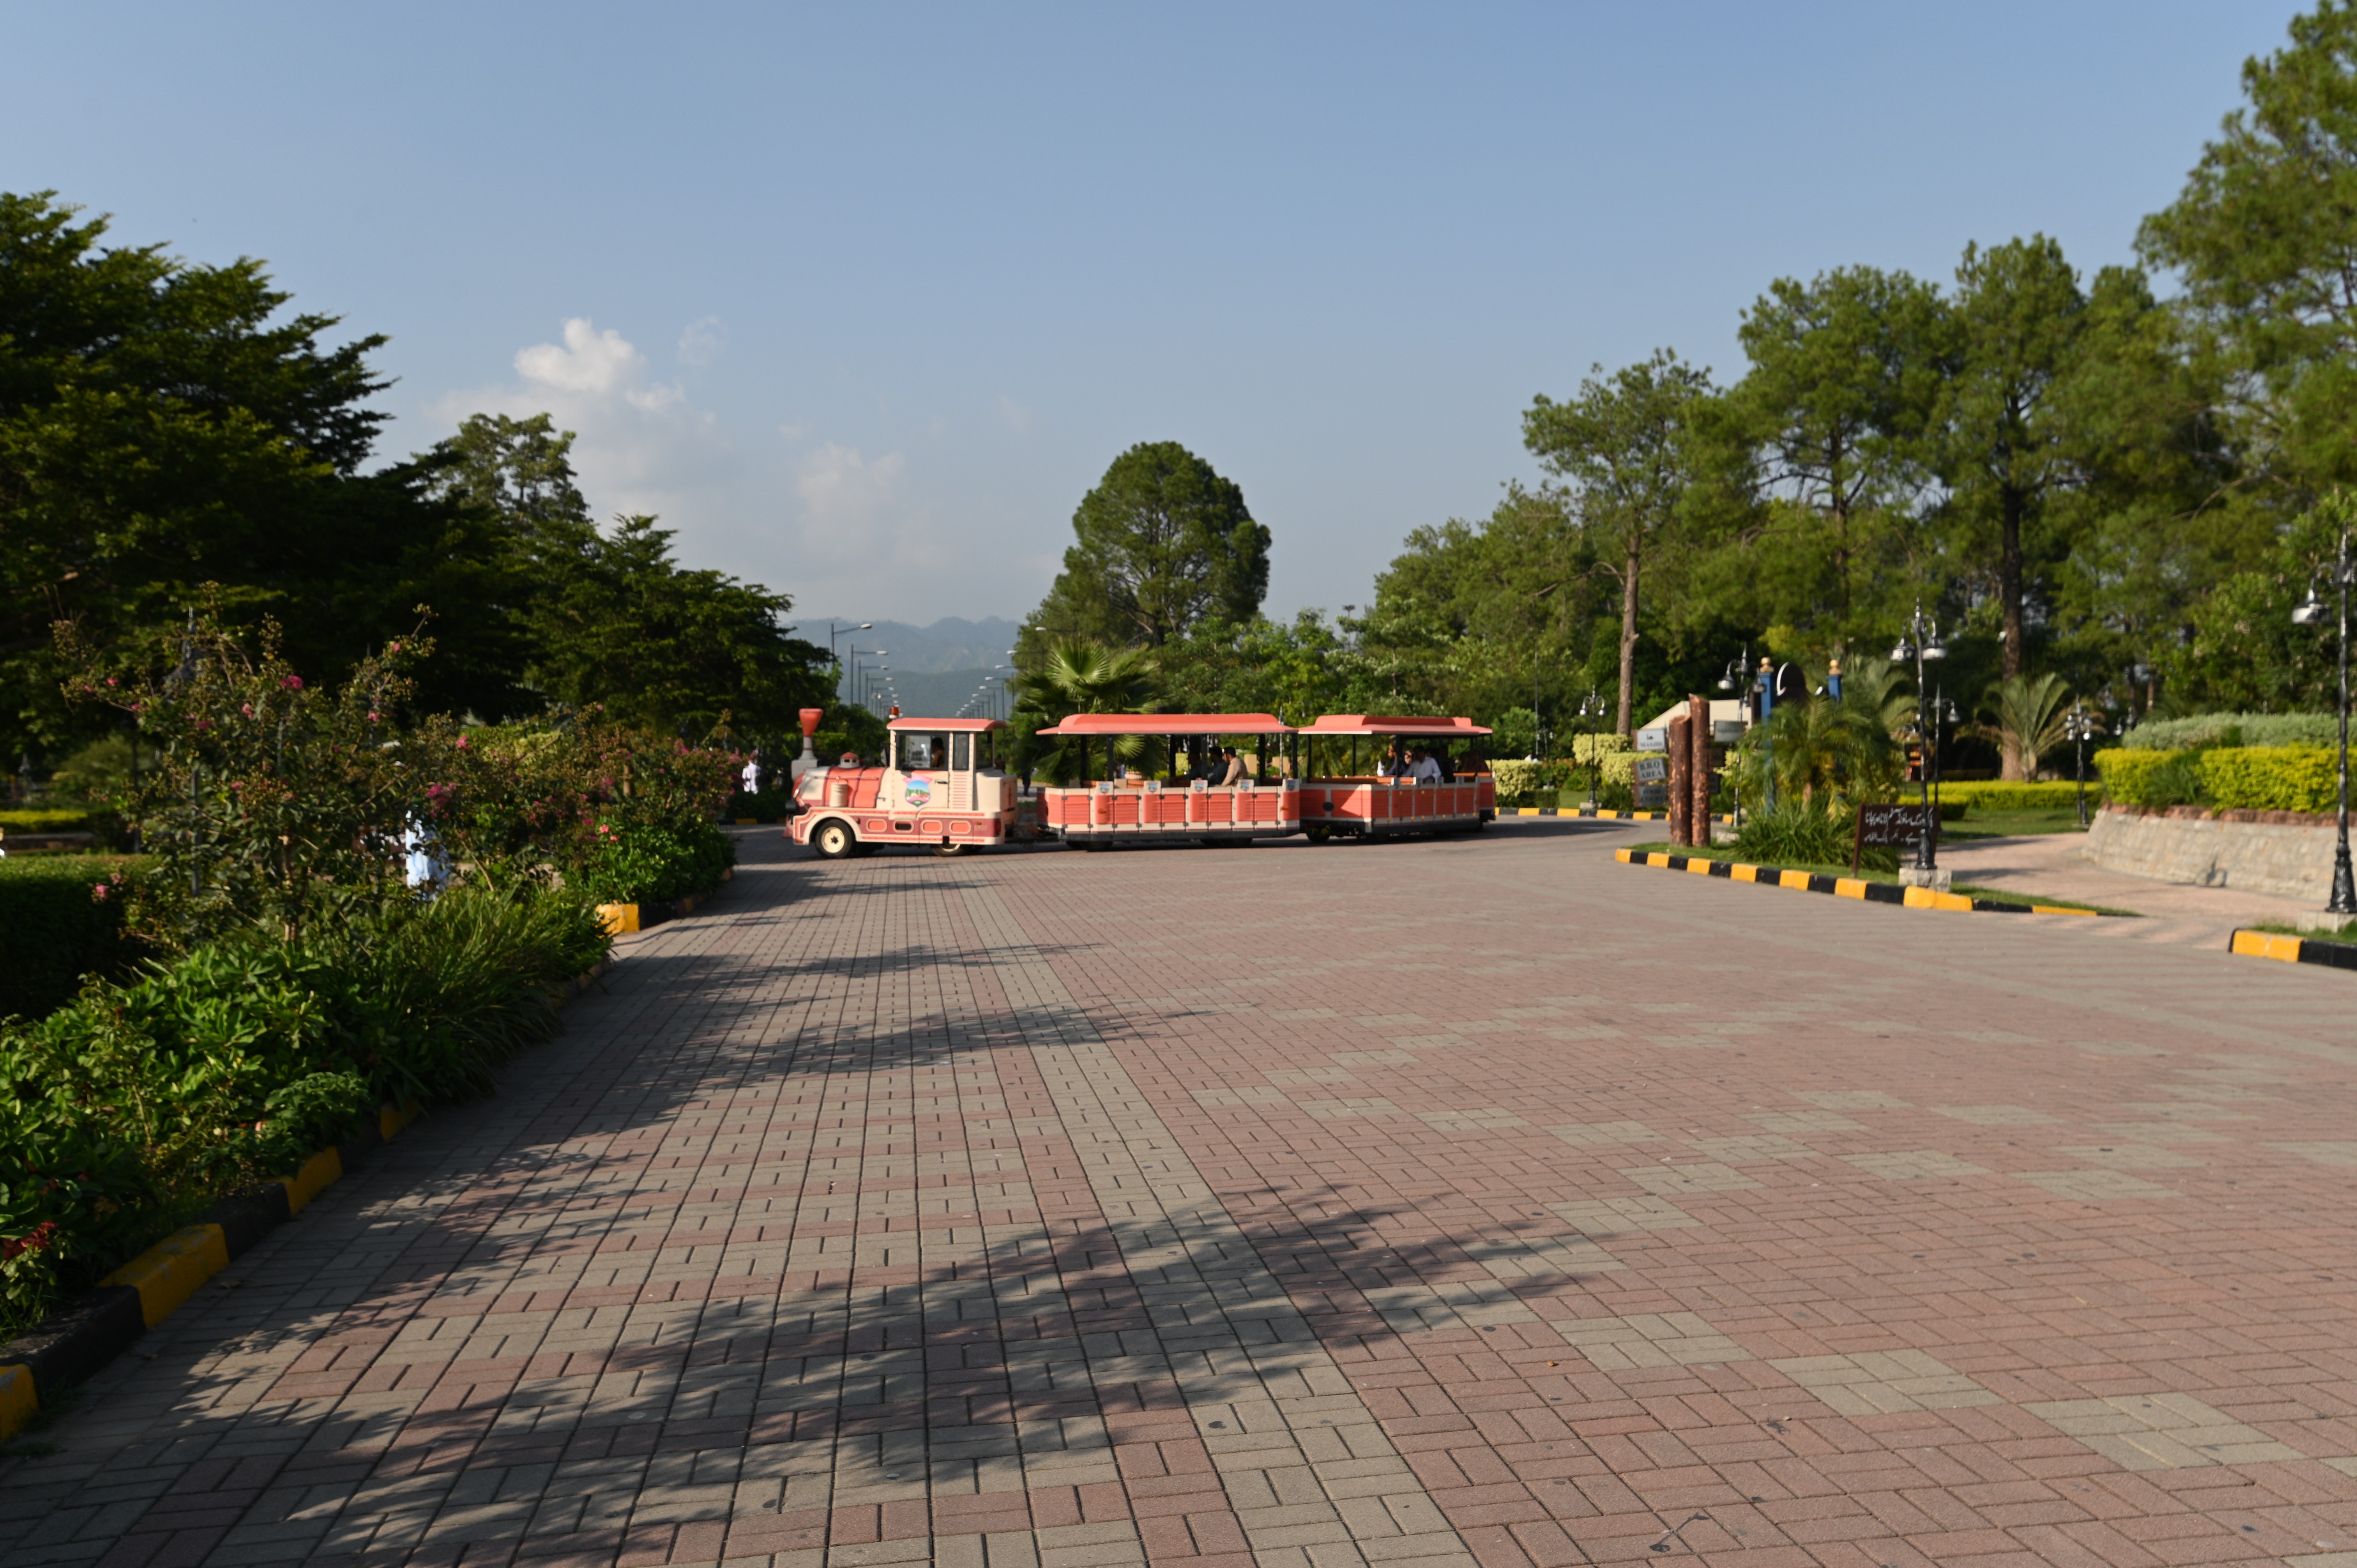 the tousist train at lake view park